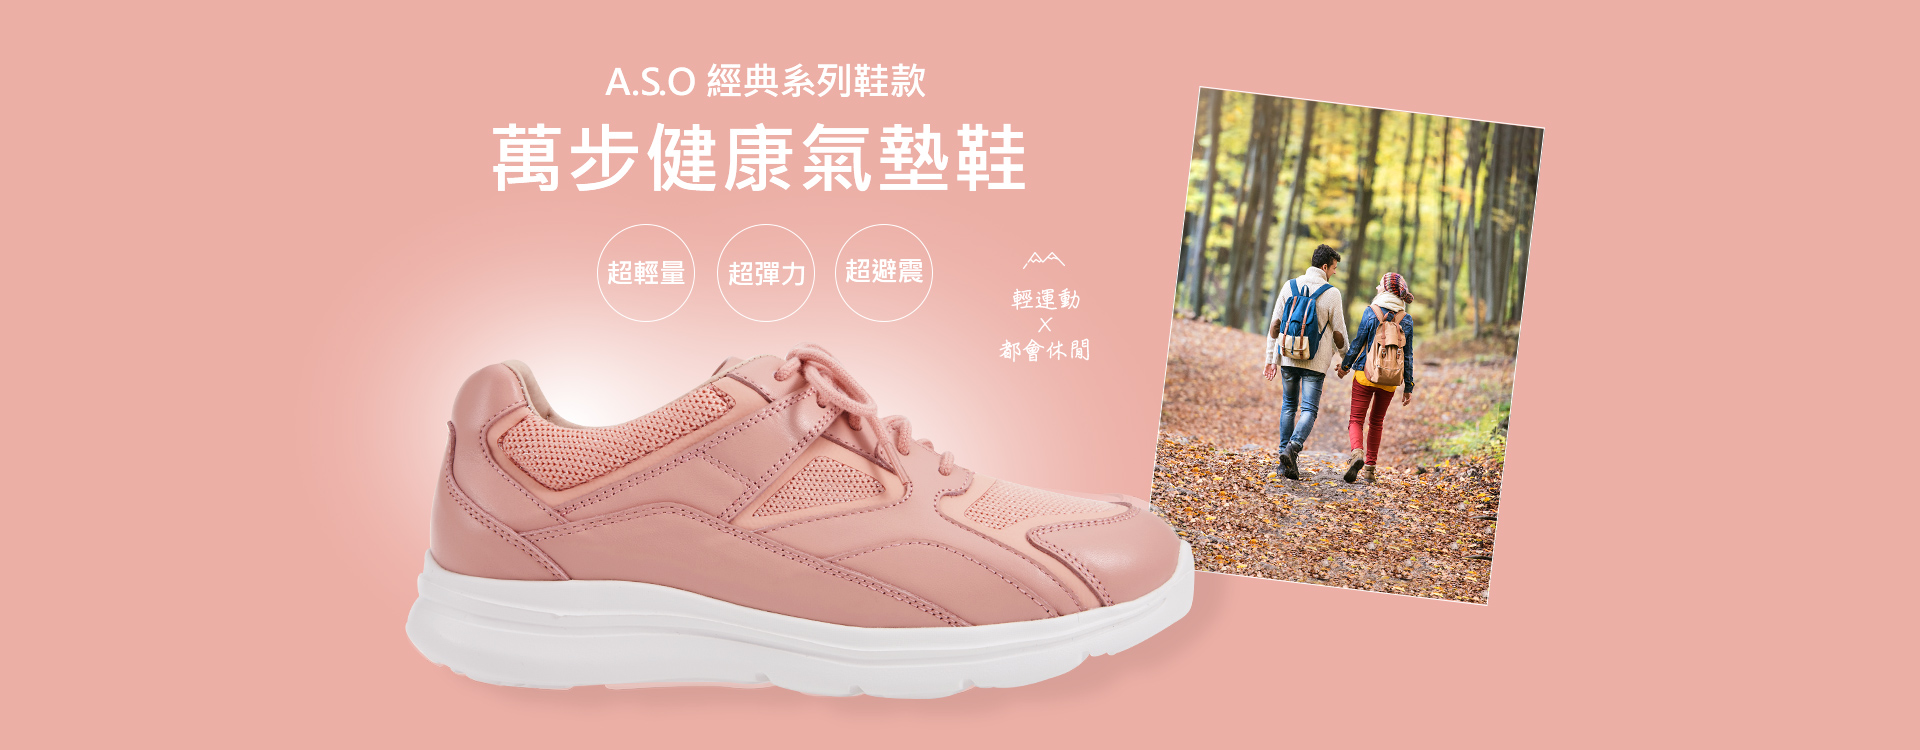 A.S.O經典系列鞋款萬步健康氣墊鞋